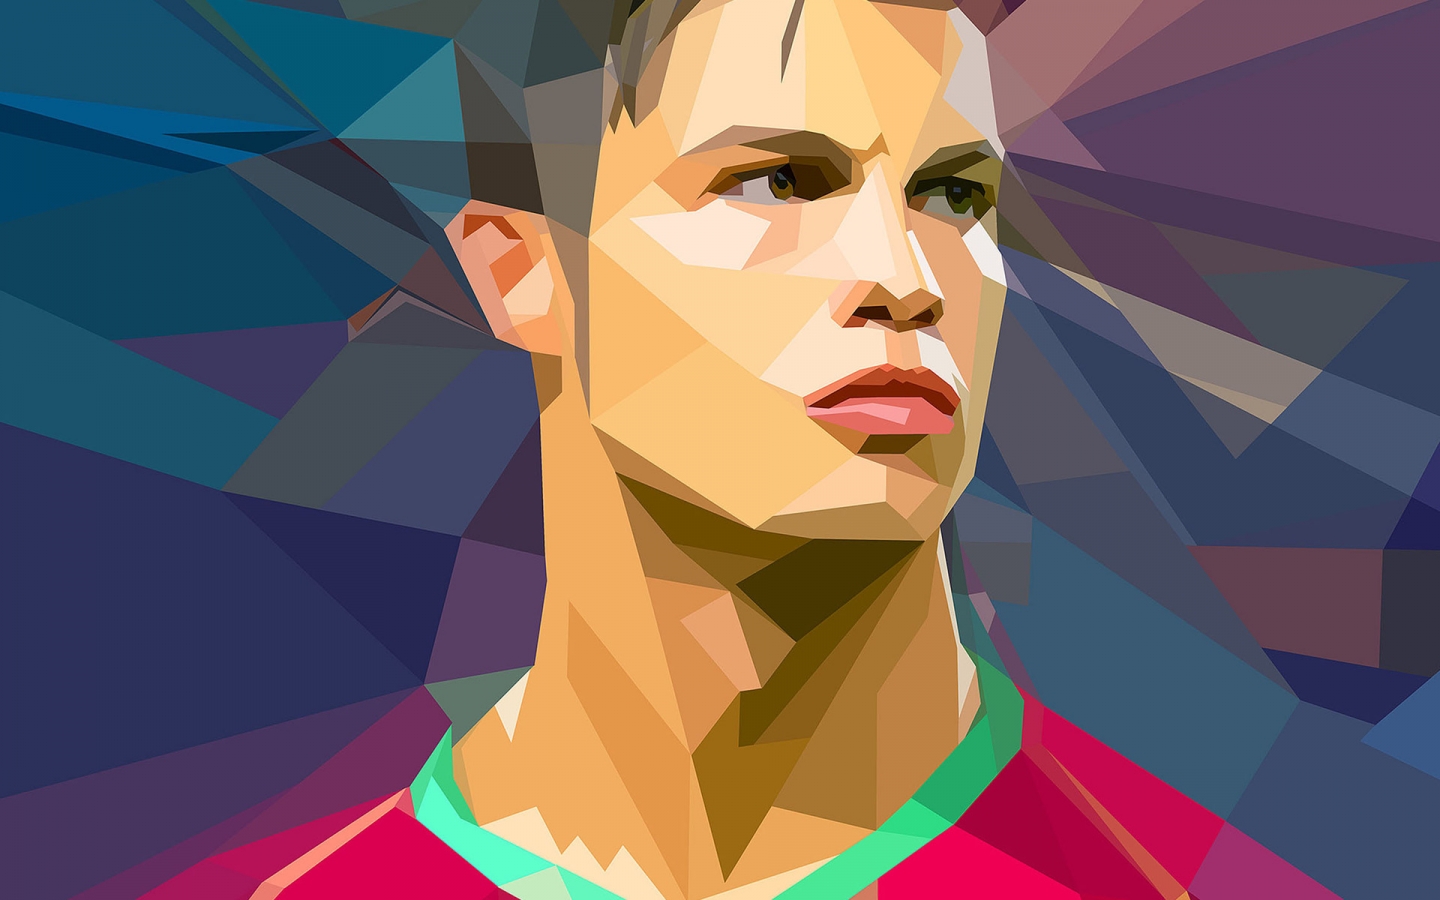 Cristiano Ronaldo Vector for 1440 x 900 widescreen resolution